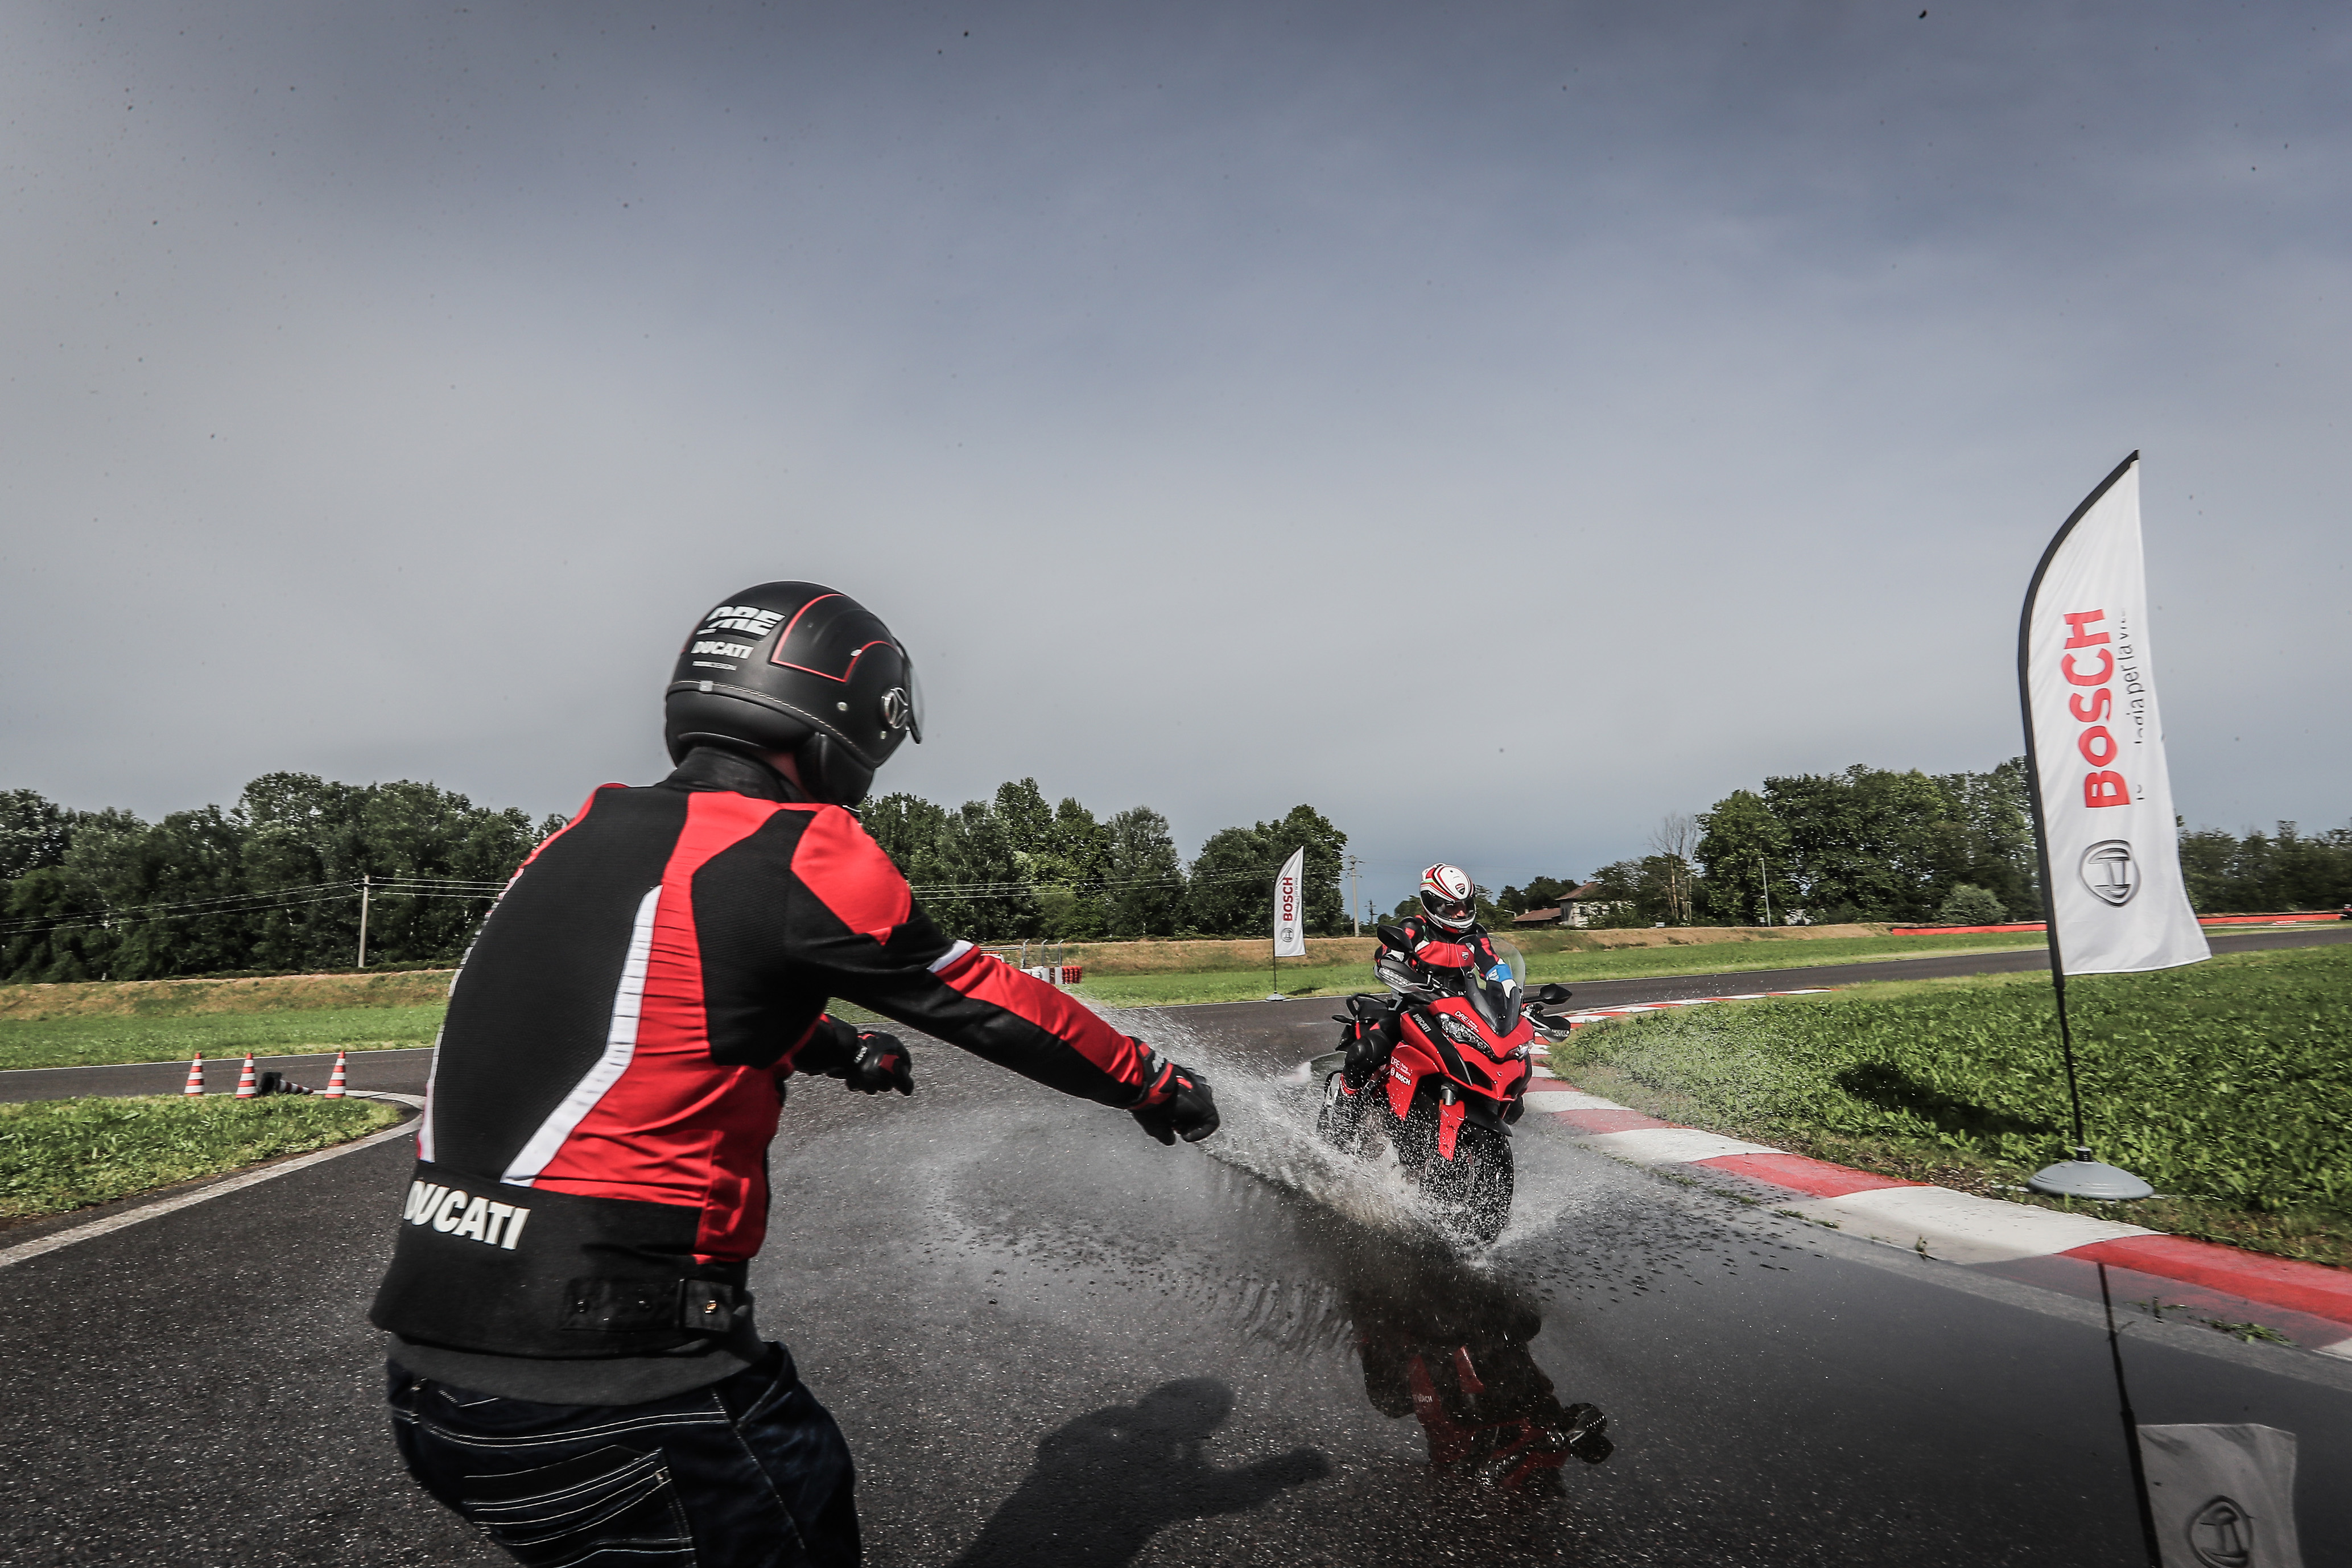 Bosch e Ducati: la partnership all’insegna della sicurezza continua anche al World Ducati Week (WDW) 2018